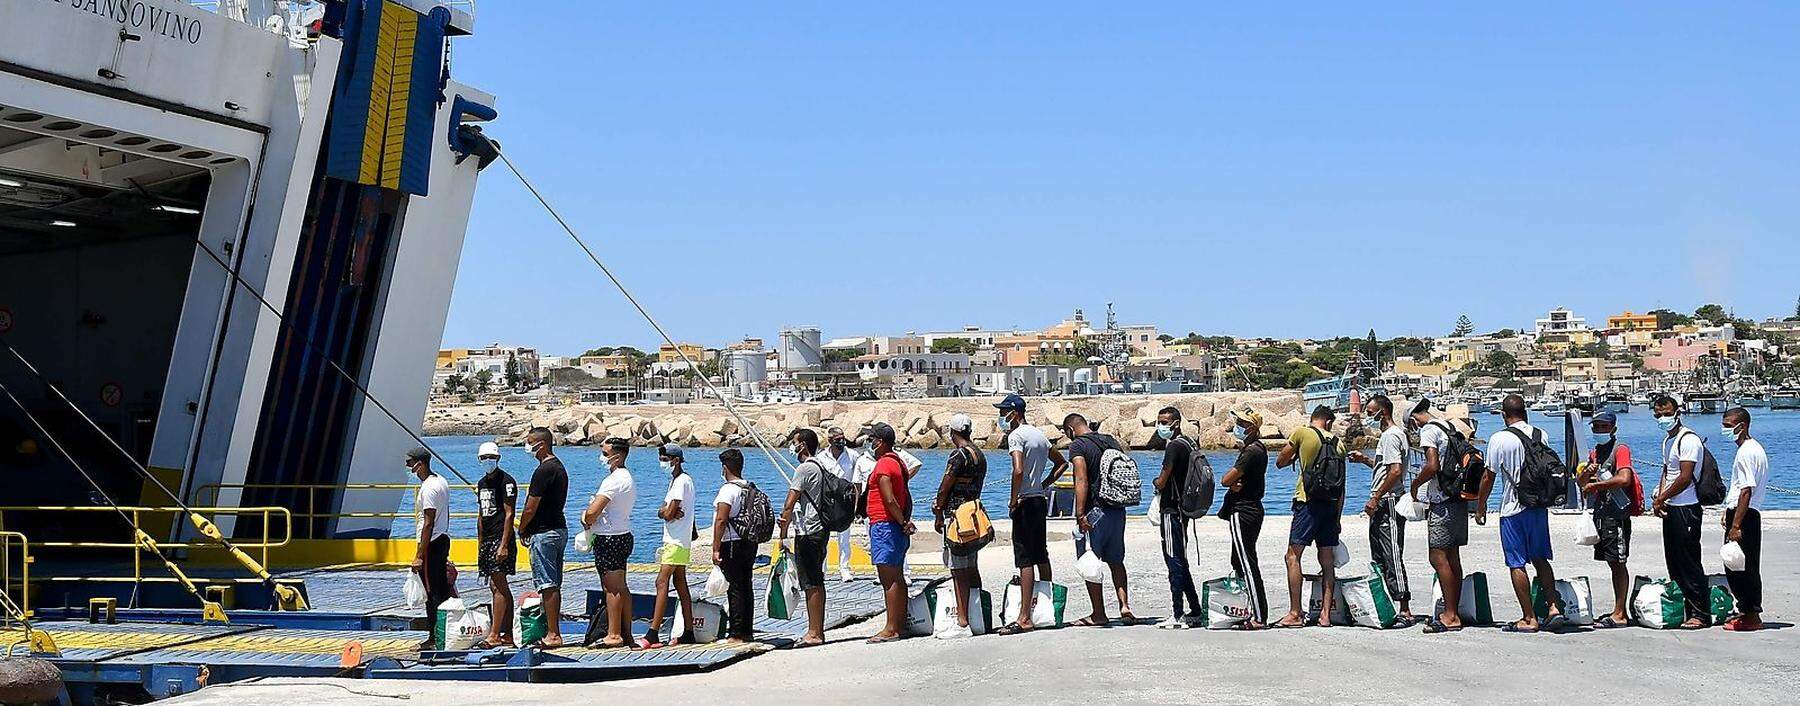 Migranten und Flüchtlinge stellen sich an, um von den Behörden per Fähre von Lampedusa weiter nach Sizilien gebracht zu werden. 